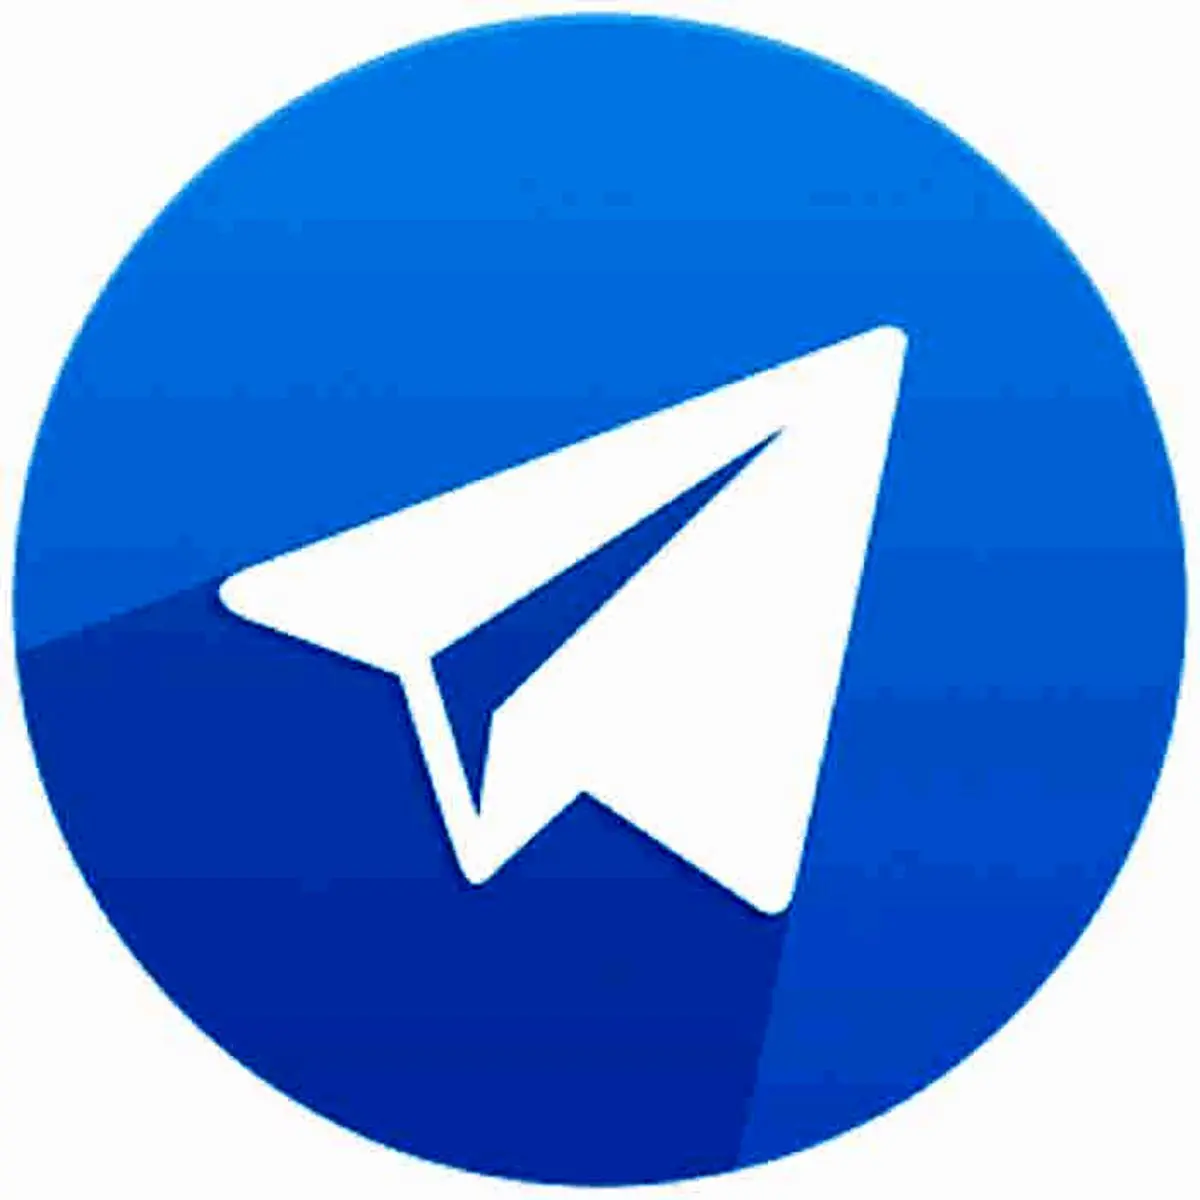 میخوای توی تلگرام تماس تصویری داشته باشی ولی نمیدونی چطوری؟بیا تا بهت بگم!| چگونه  در تلگرام با دیگران ویدیو کال کنیم؟
